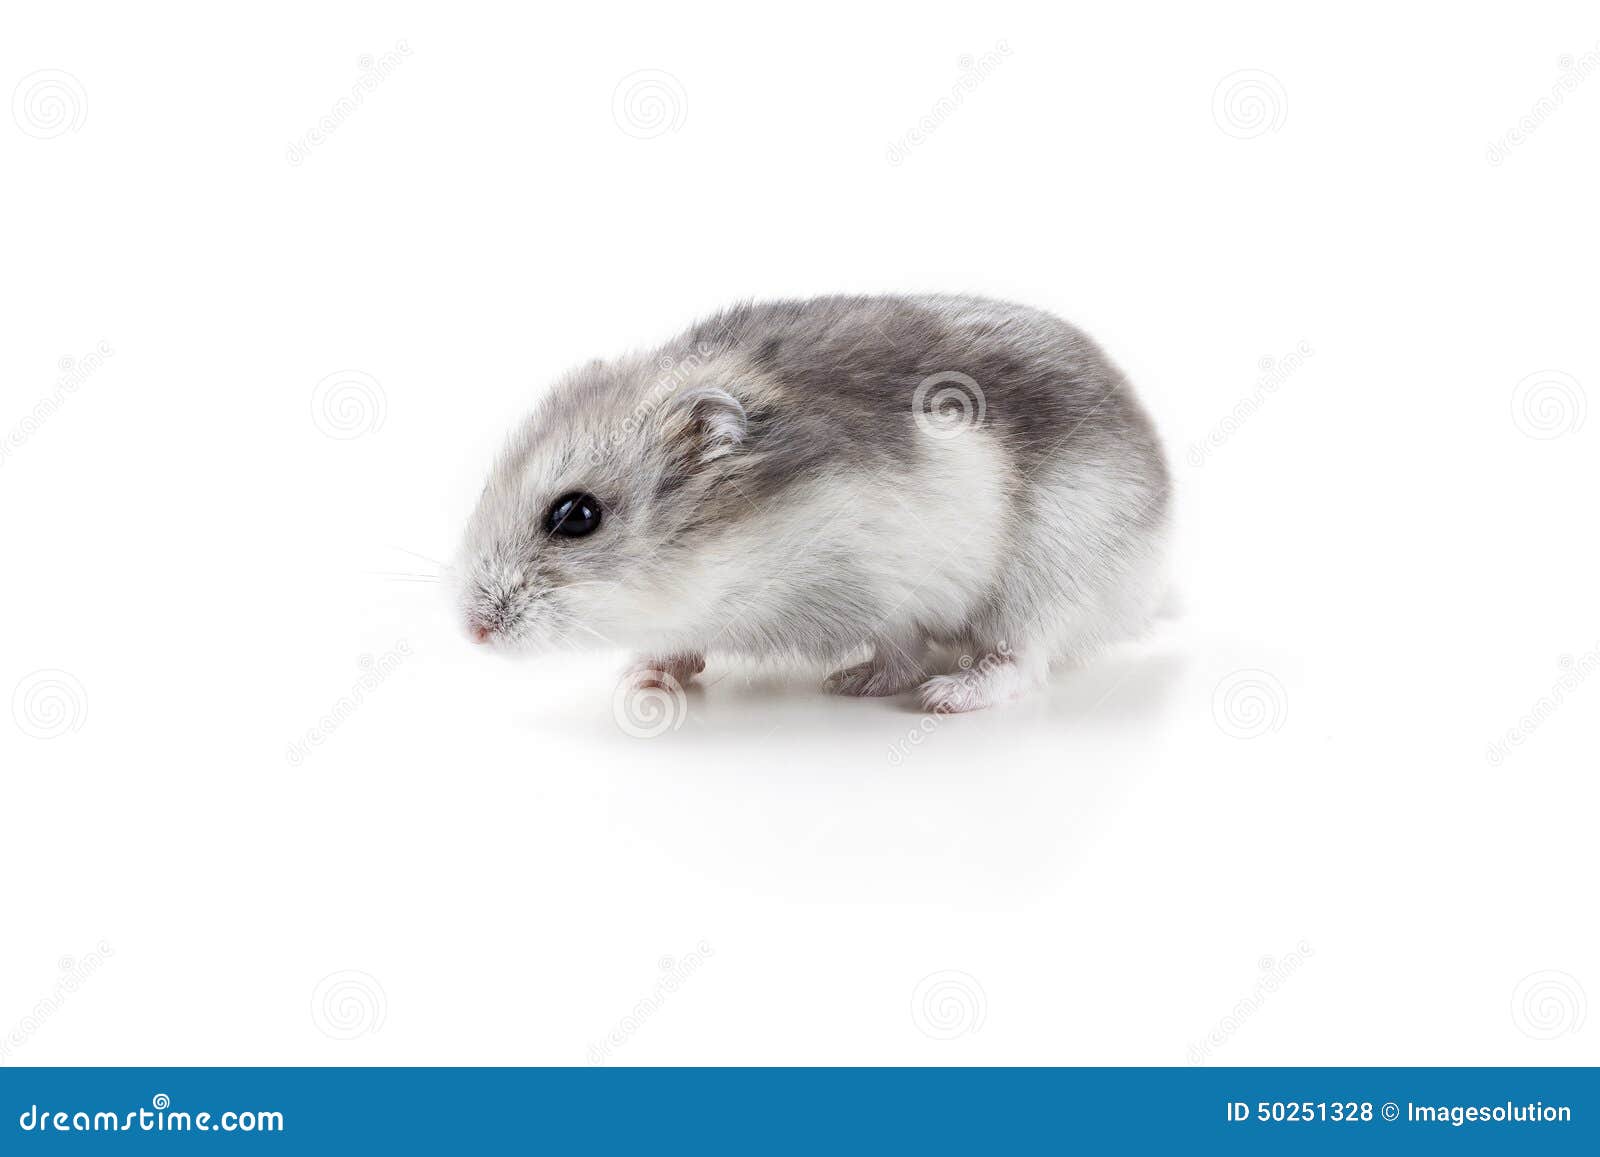 Leuke Hamster Op Witte Achtergrond Stock Foto - Image of huisdier: